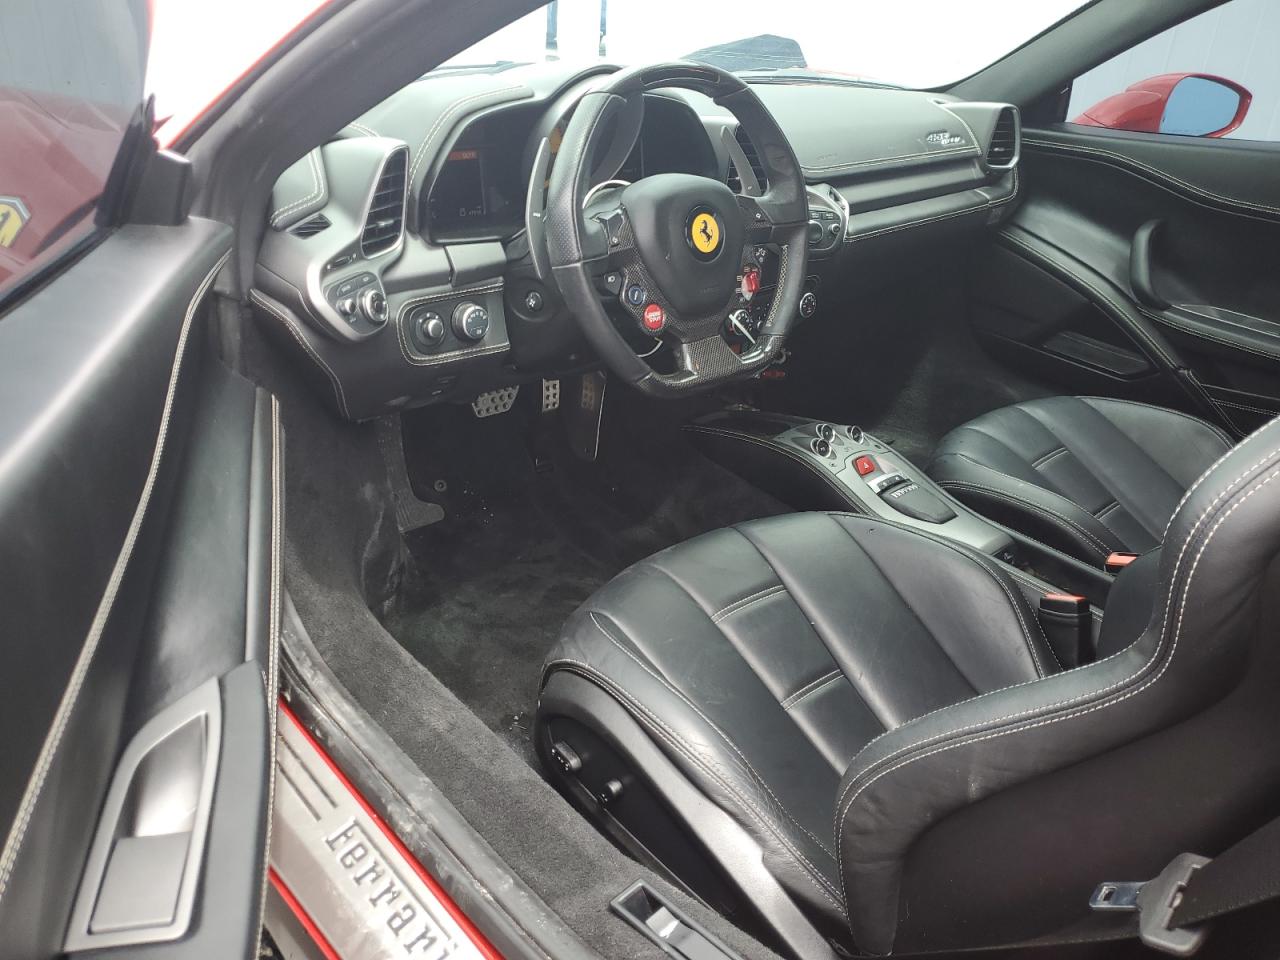 2012 Ferrari 458 Italia VIN: ZFF67NFAXC0184744 Lot: 57826024